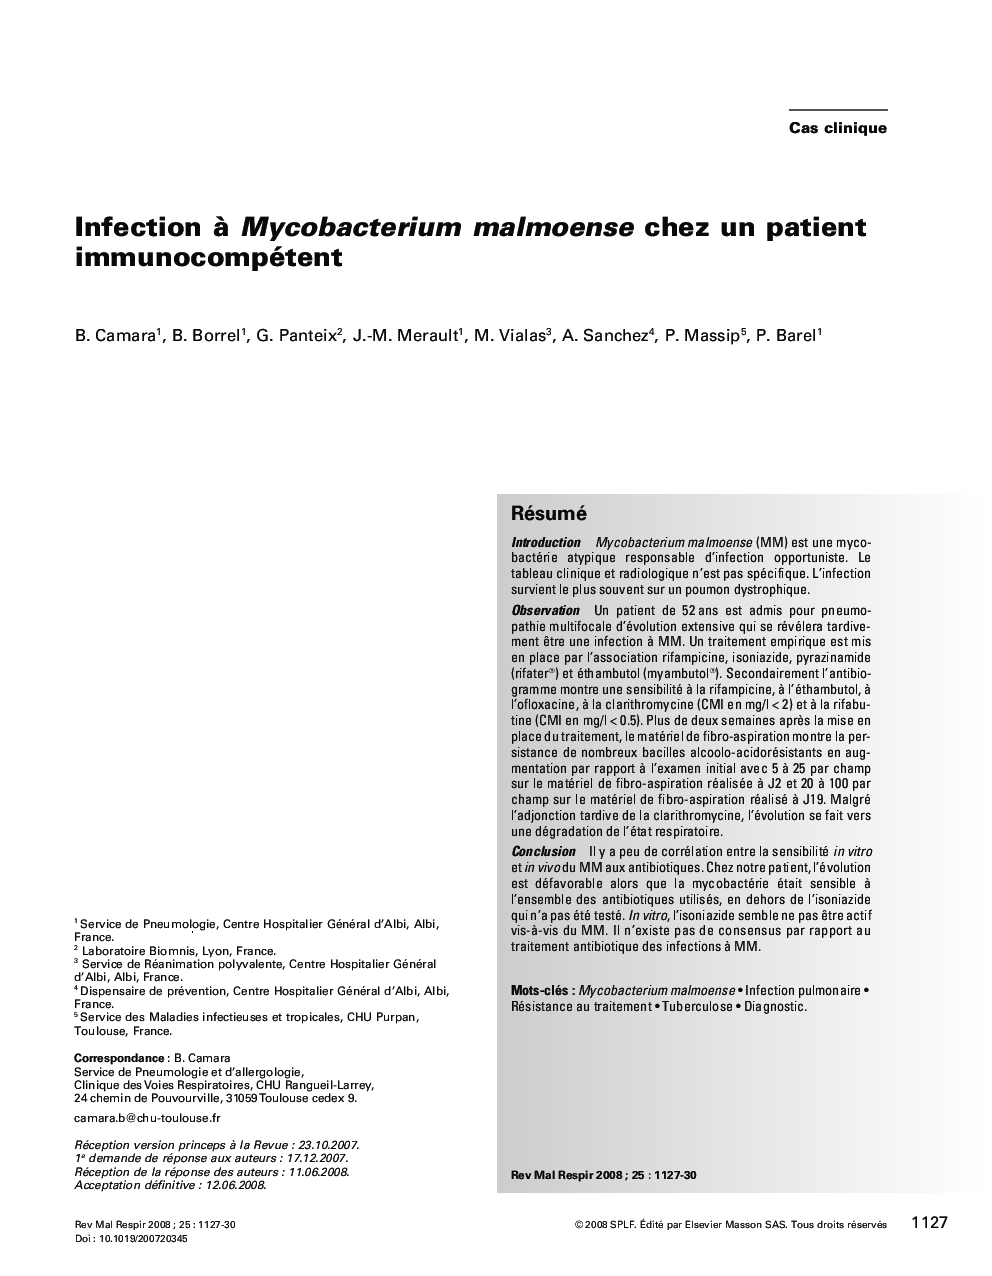 Infection Ã  Mycobacterium malmoense chez un patient immunocompétent